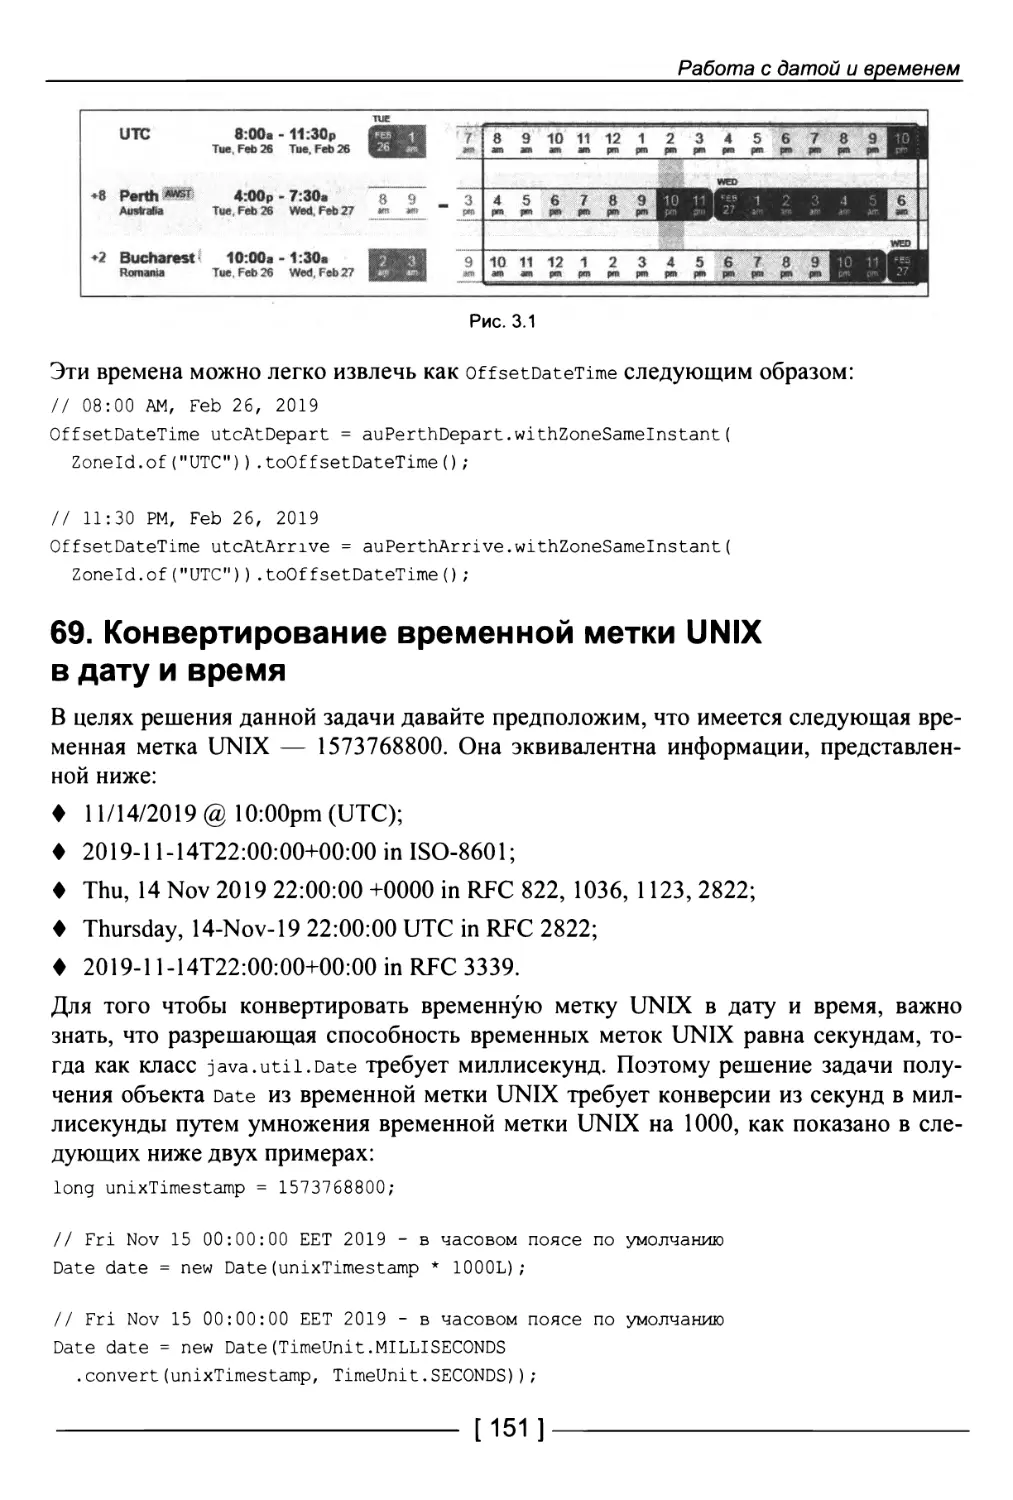 69. Конвертирование временной метки UNIX в дату и время